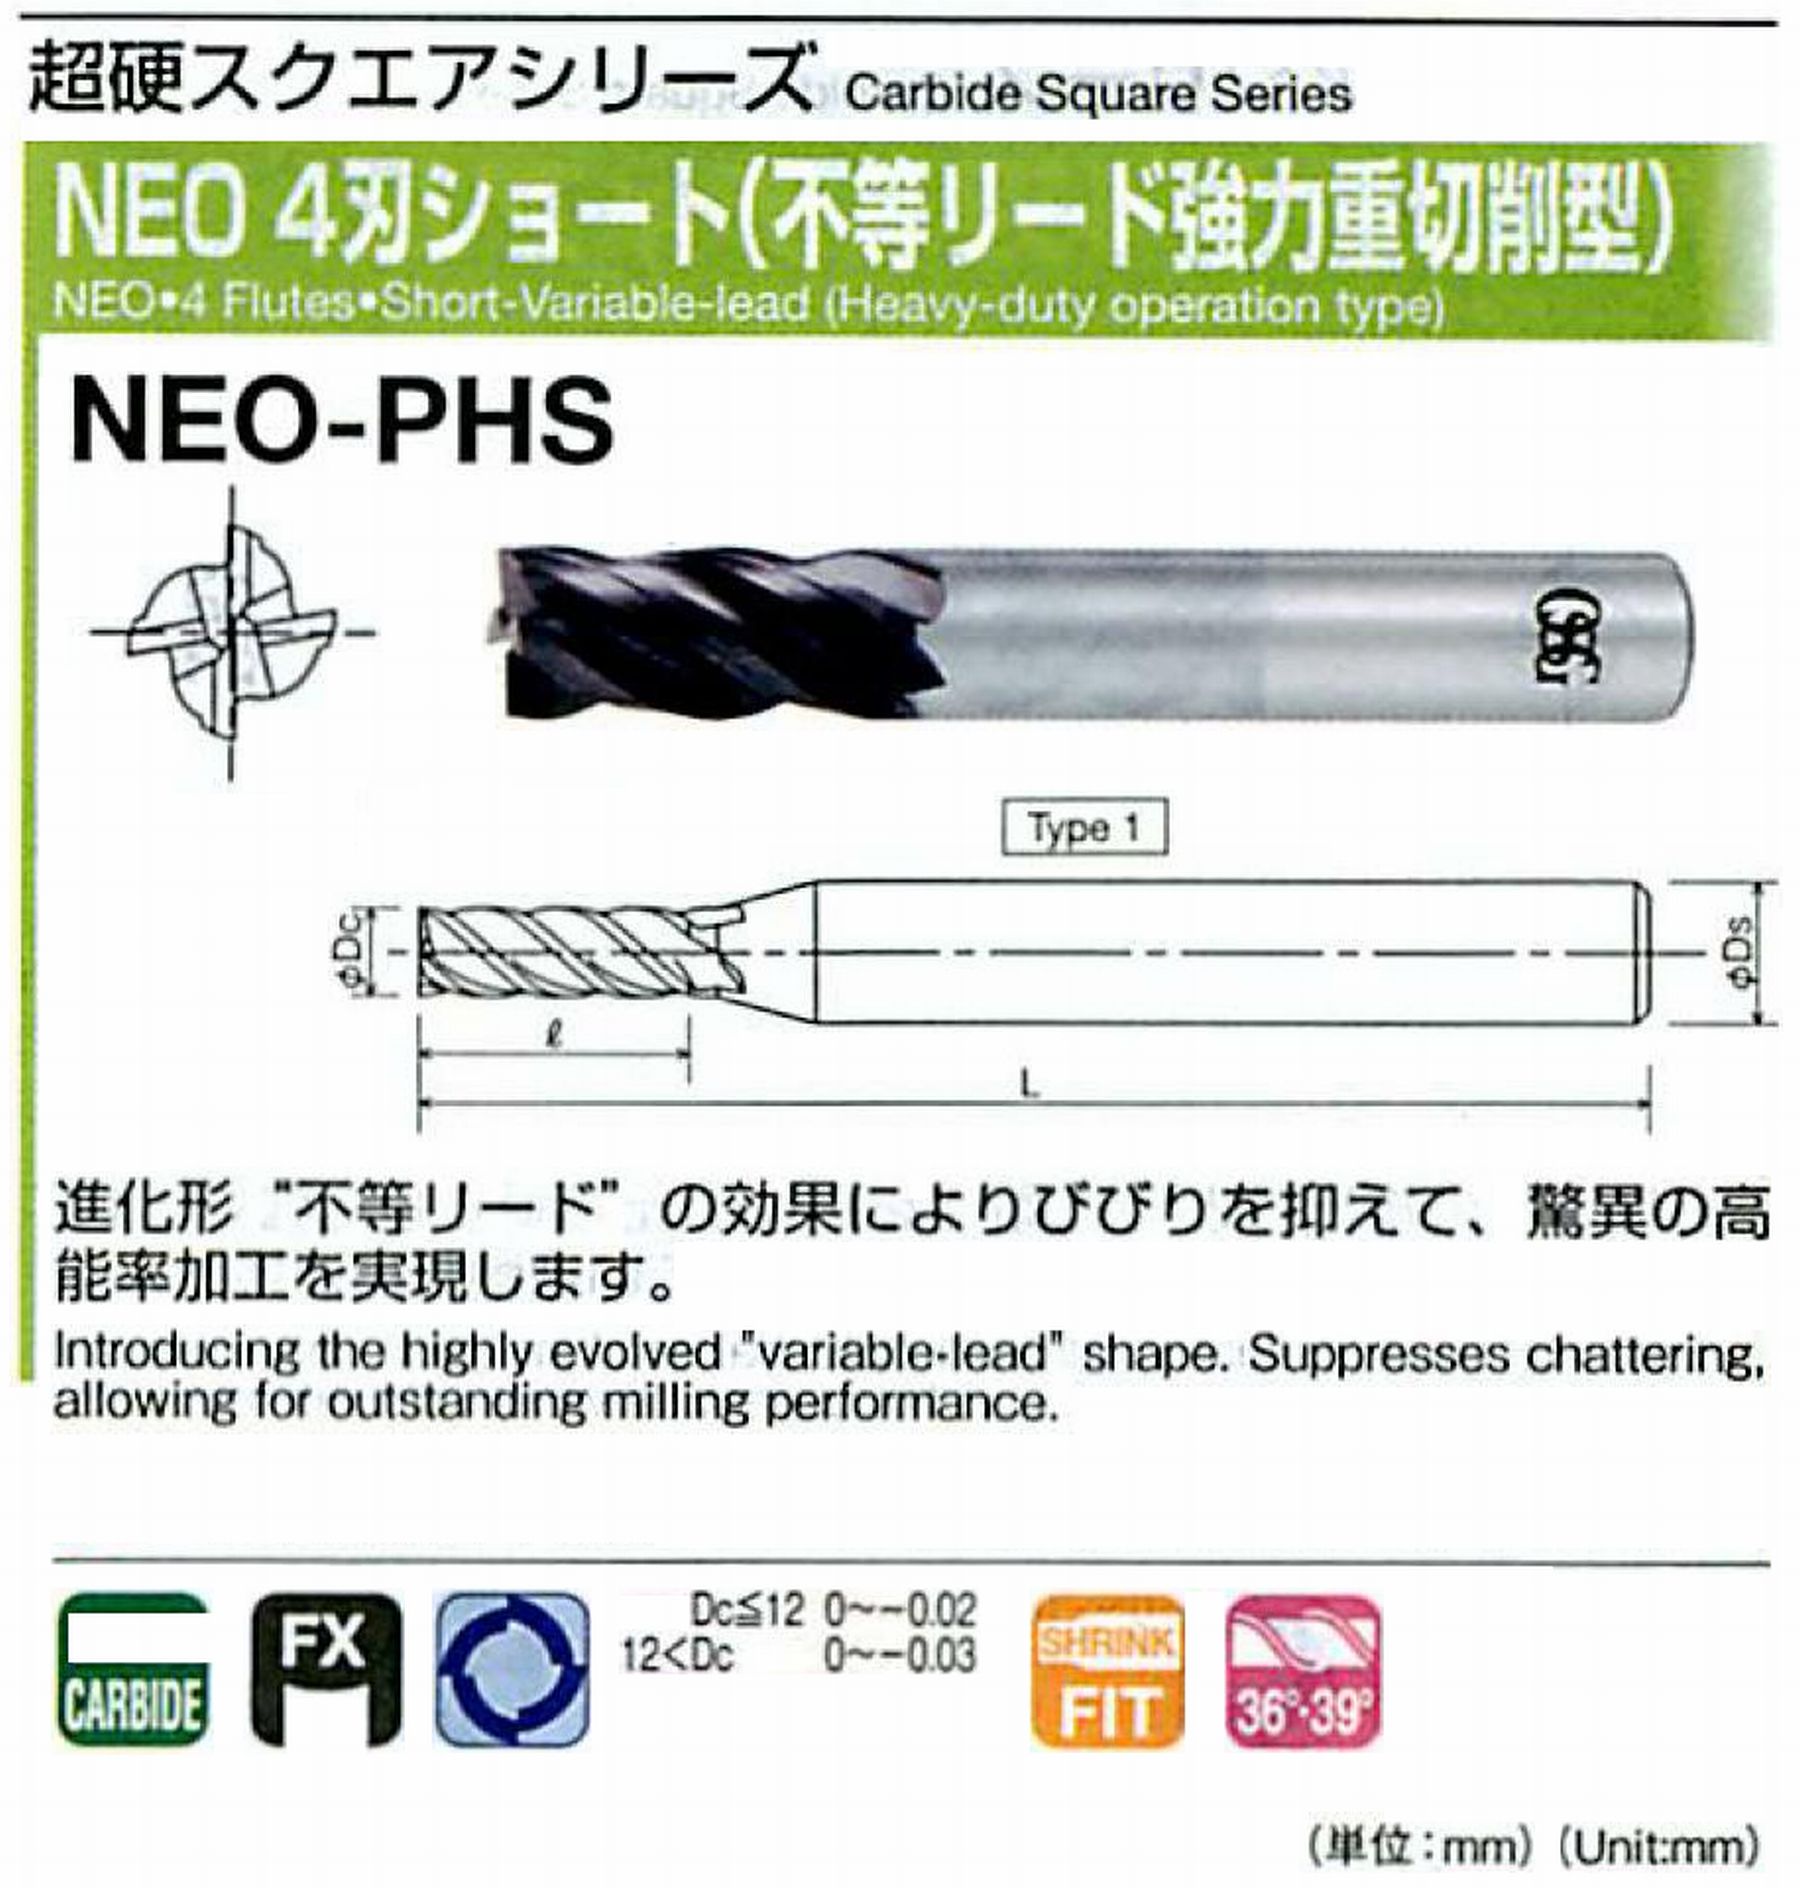 オーエスジー/OSG NEO 4刃ショート(不等リード強力重切削型) NEO-PHS 外径5 全長50 刃長10 シャンク径6mm 形状1